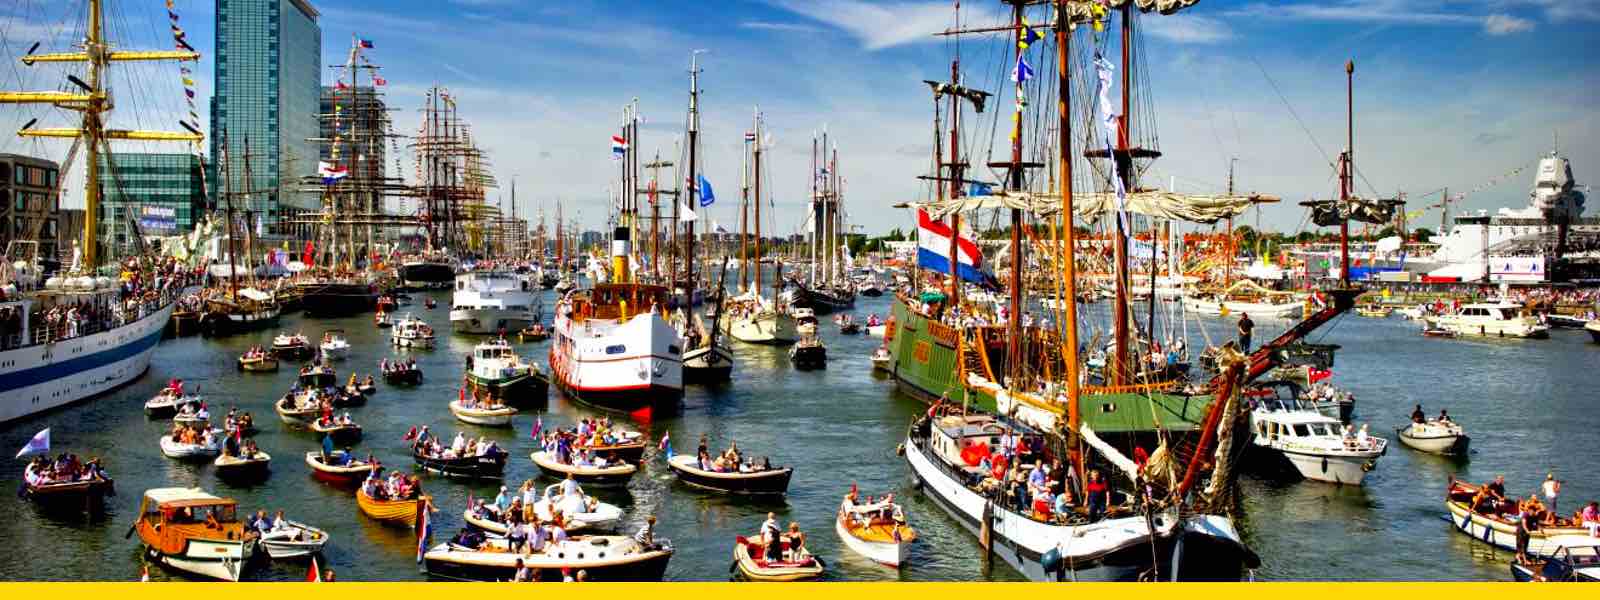 sail amsterdam 2020